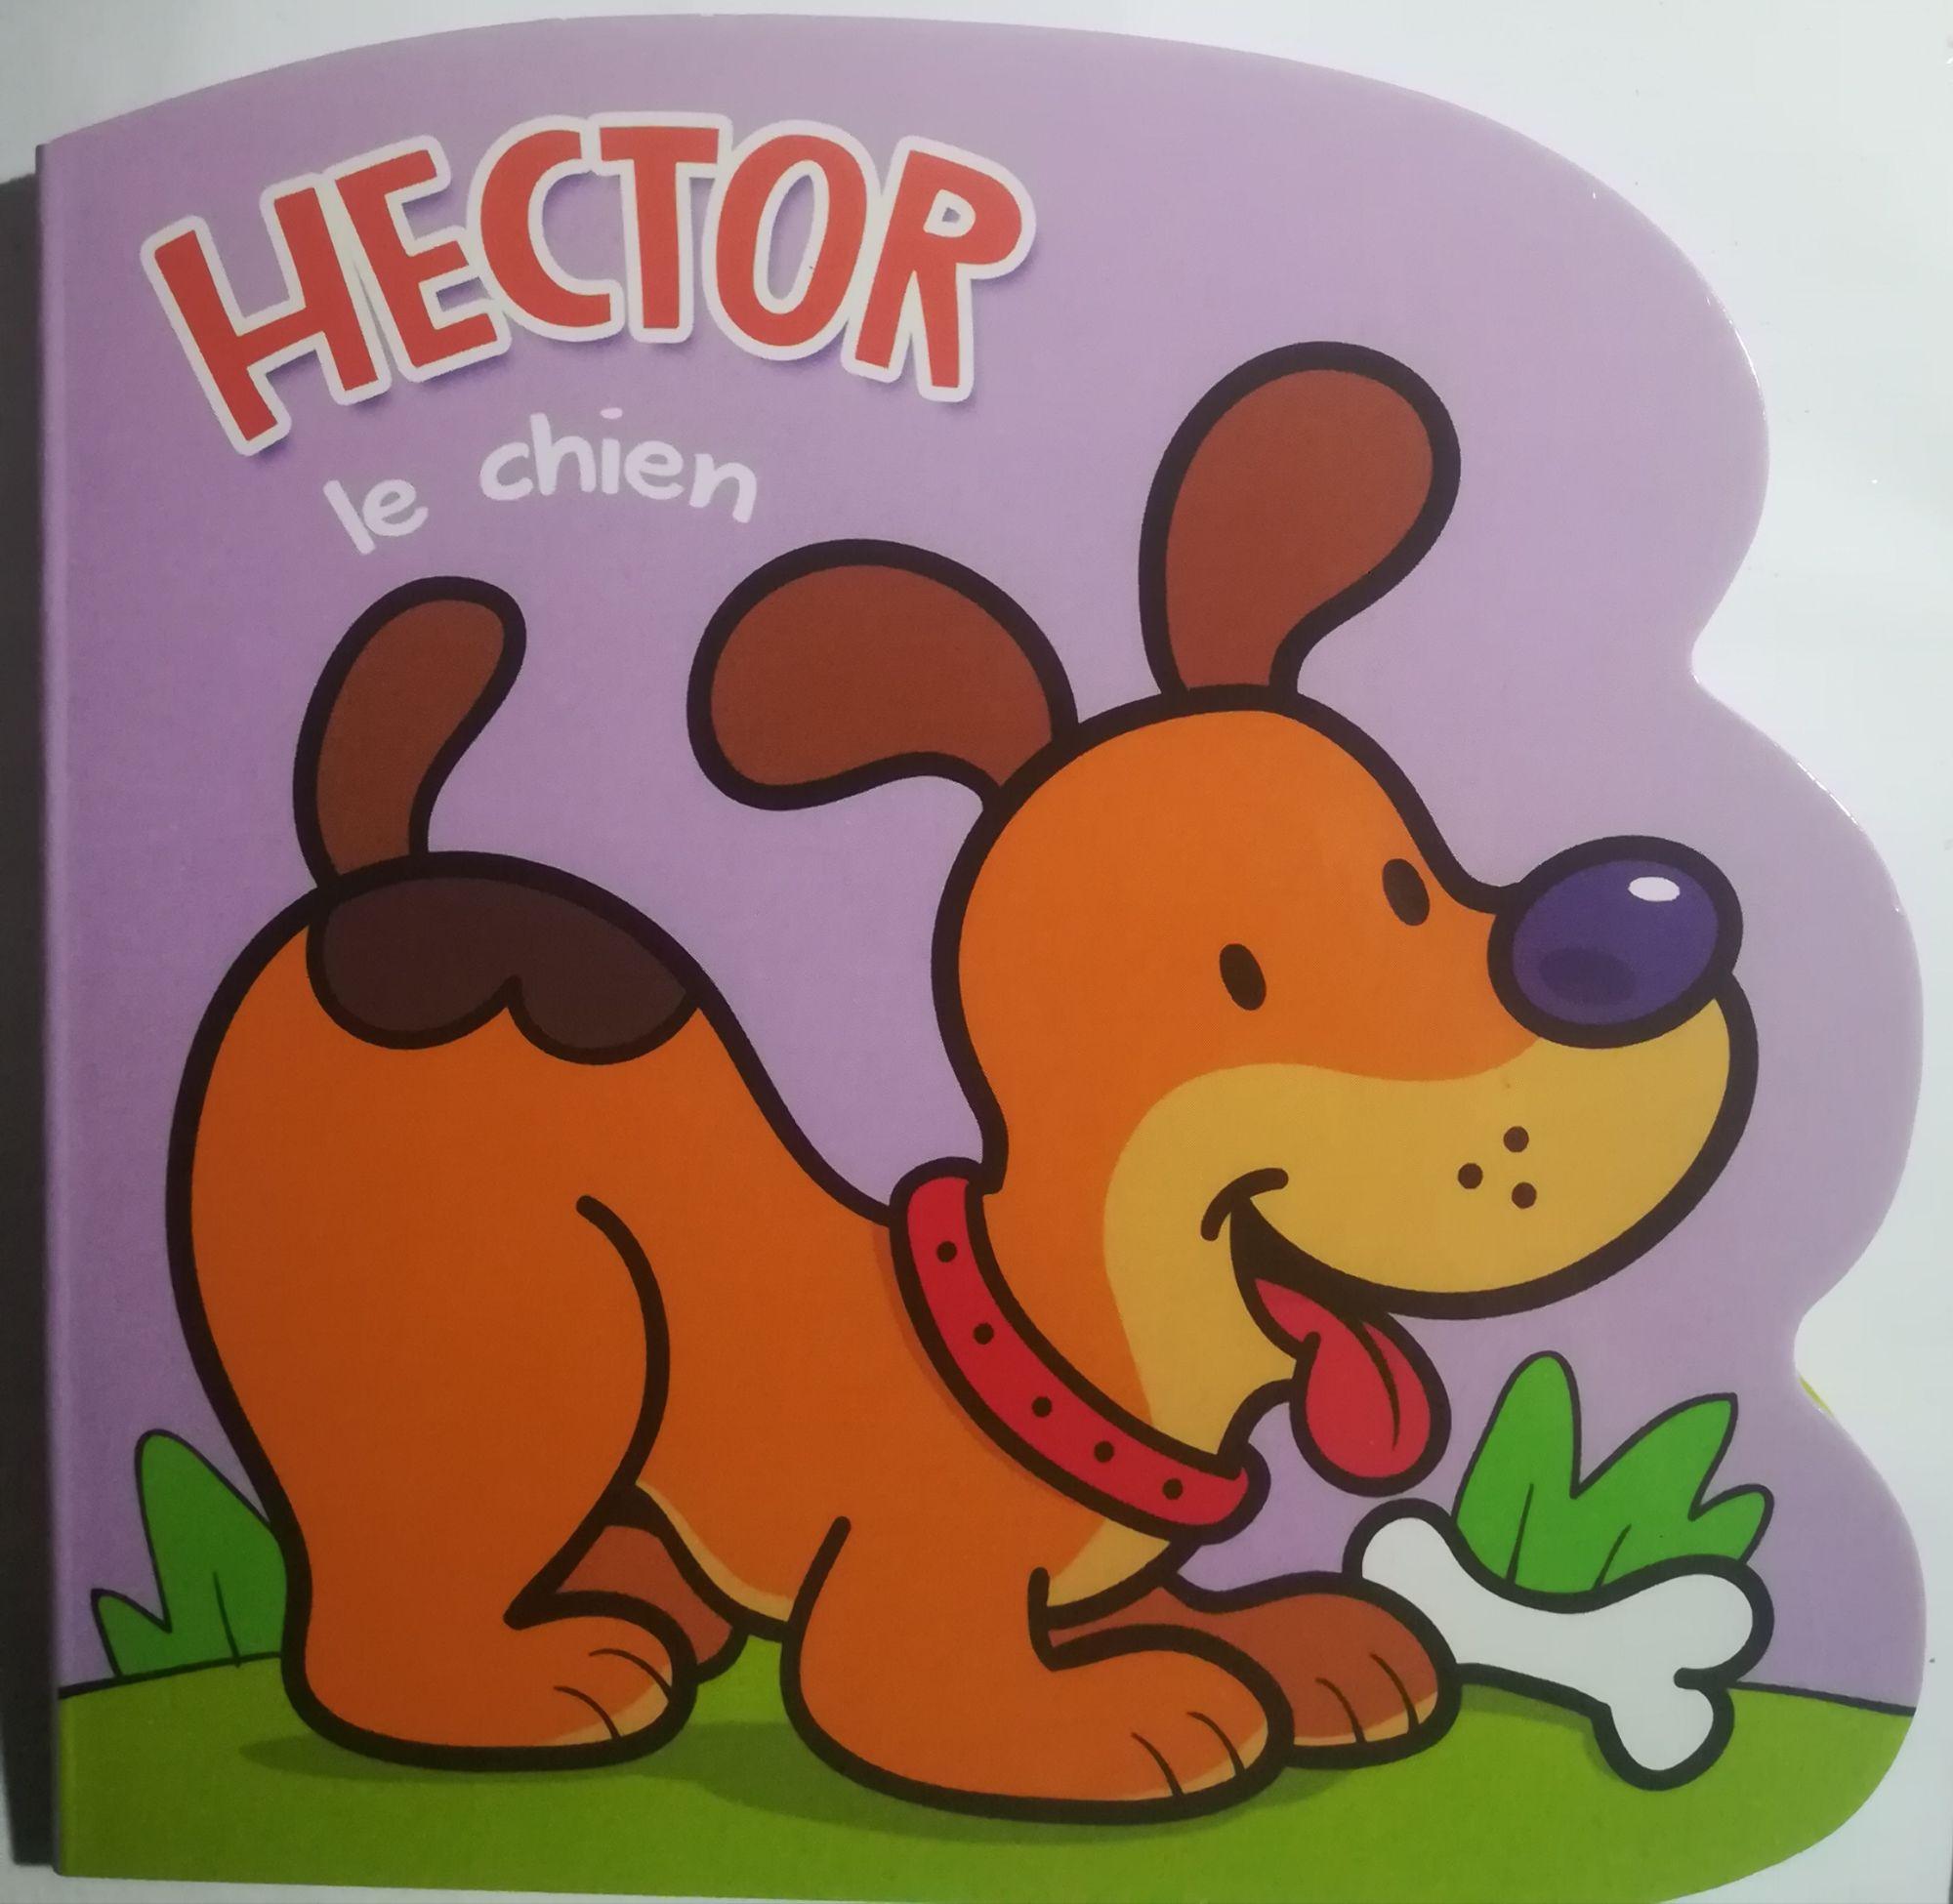 Hector le chien